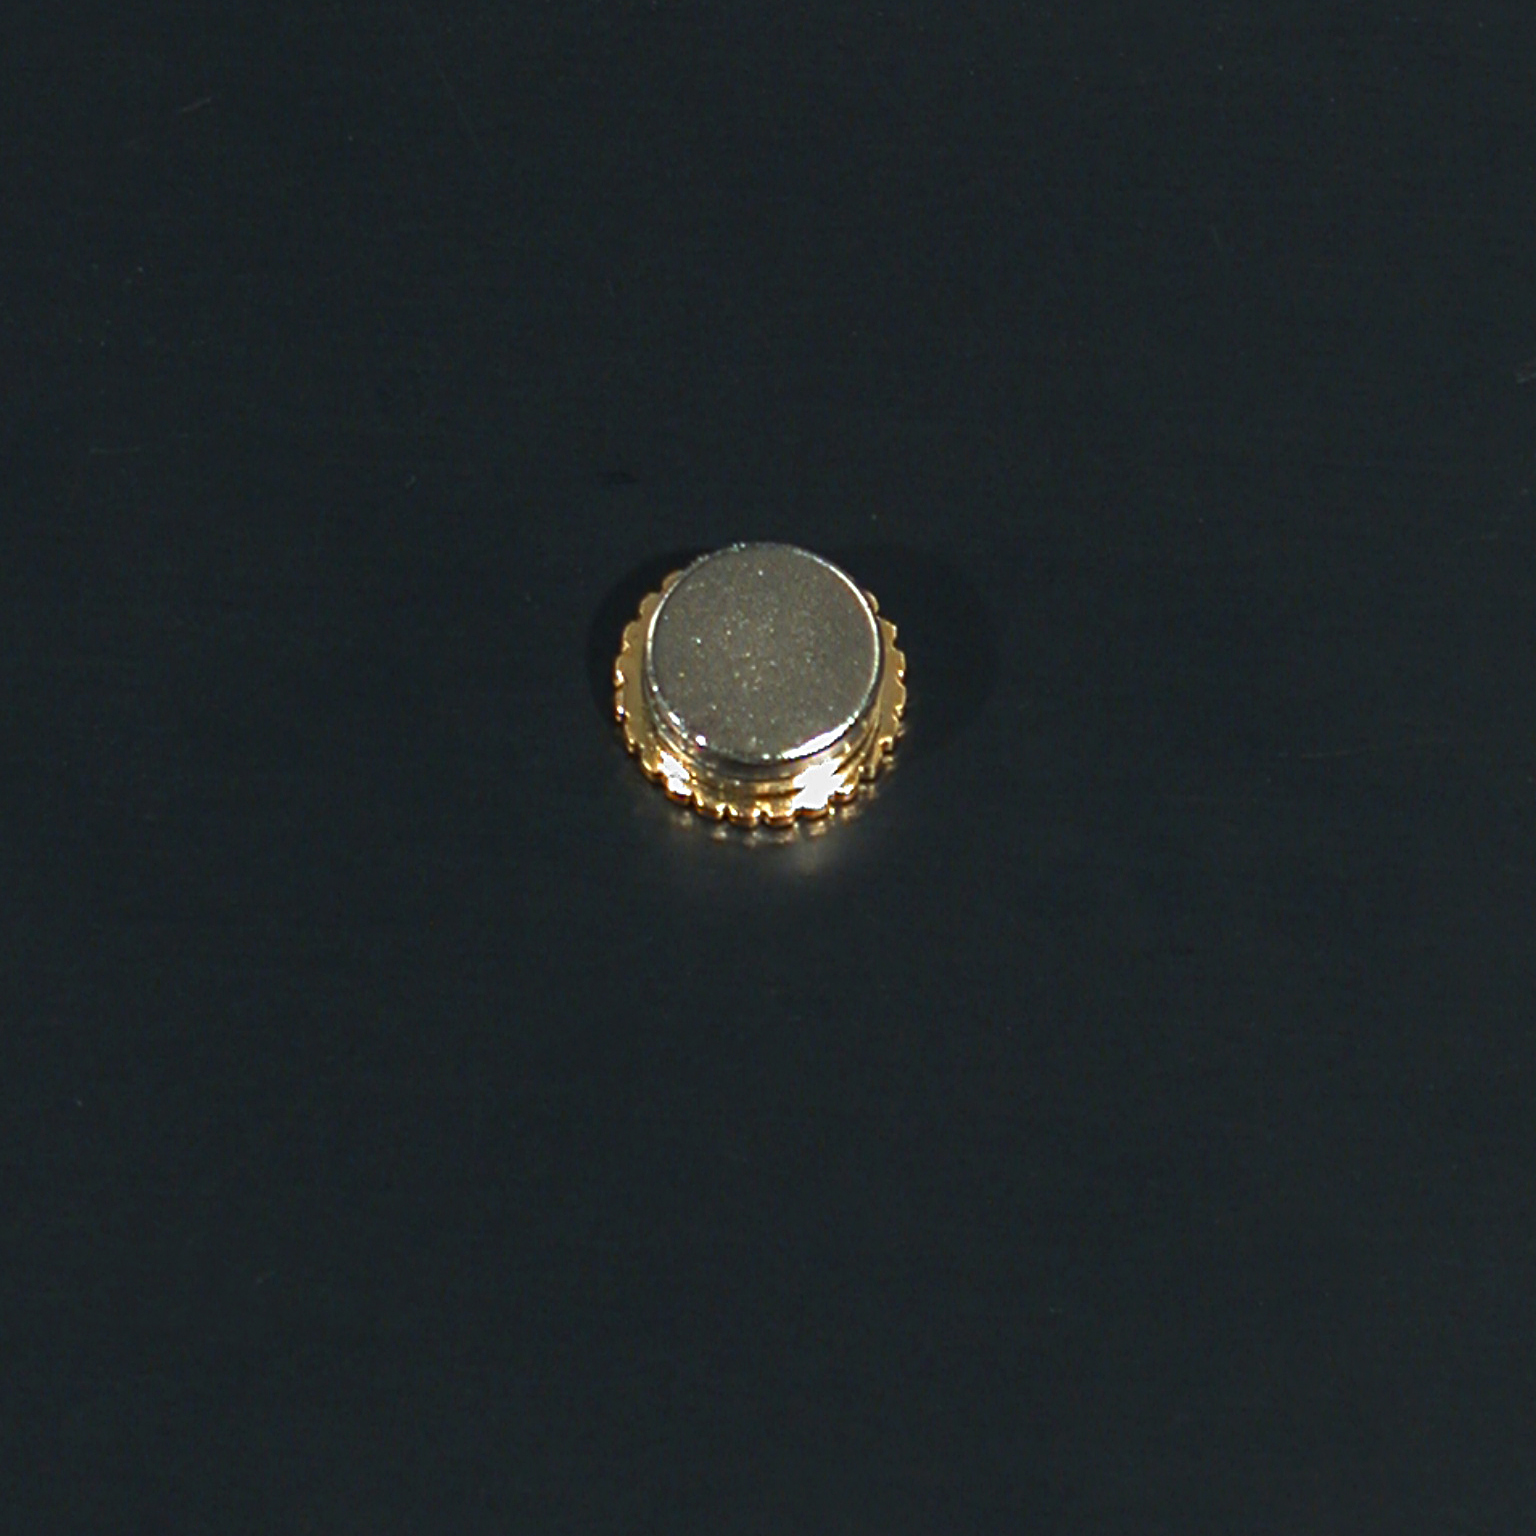 roatry-pin-o12mm-op-magneet-5-stuks-06-01-09-rotary-pin-op-magneet-keerzijde-2.jpg